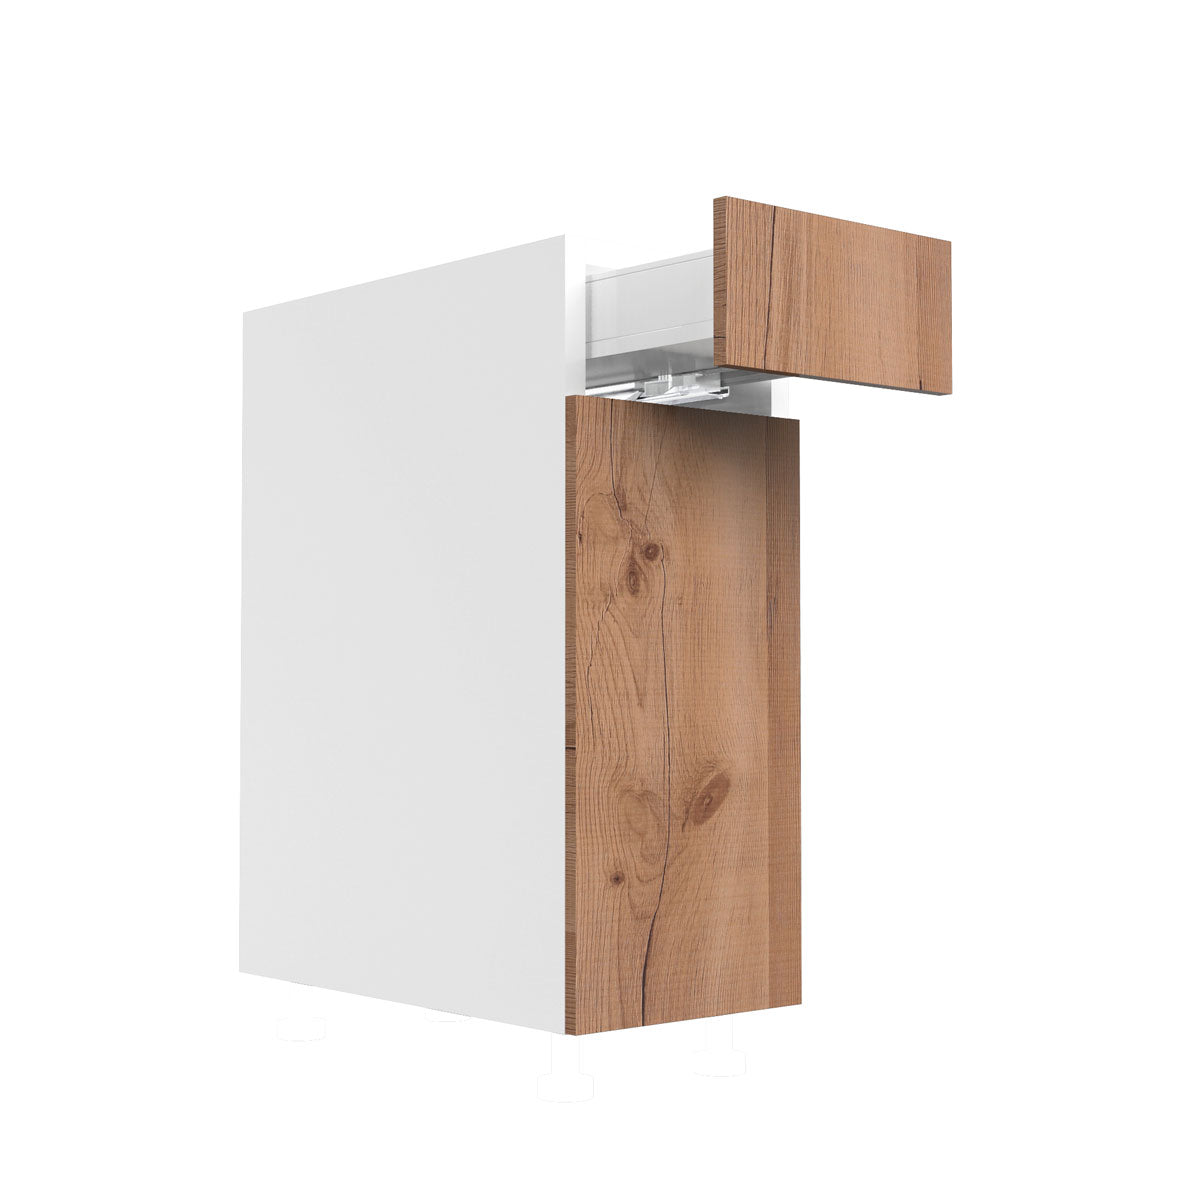 RTA - Rustic Oak - Single Door Base Cabinets | 12"W x 30"H x 23.8"D